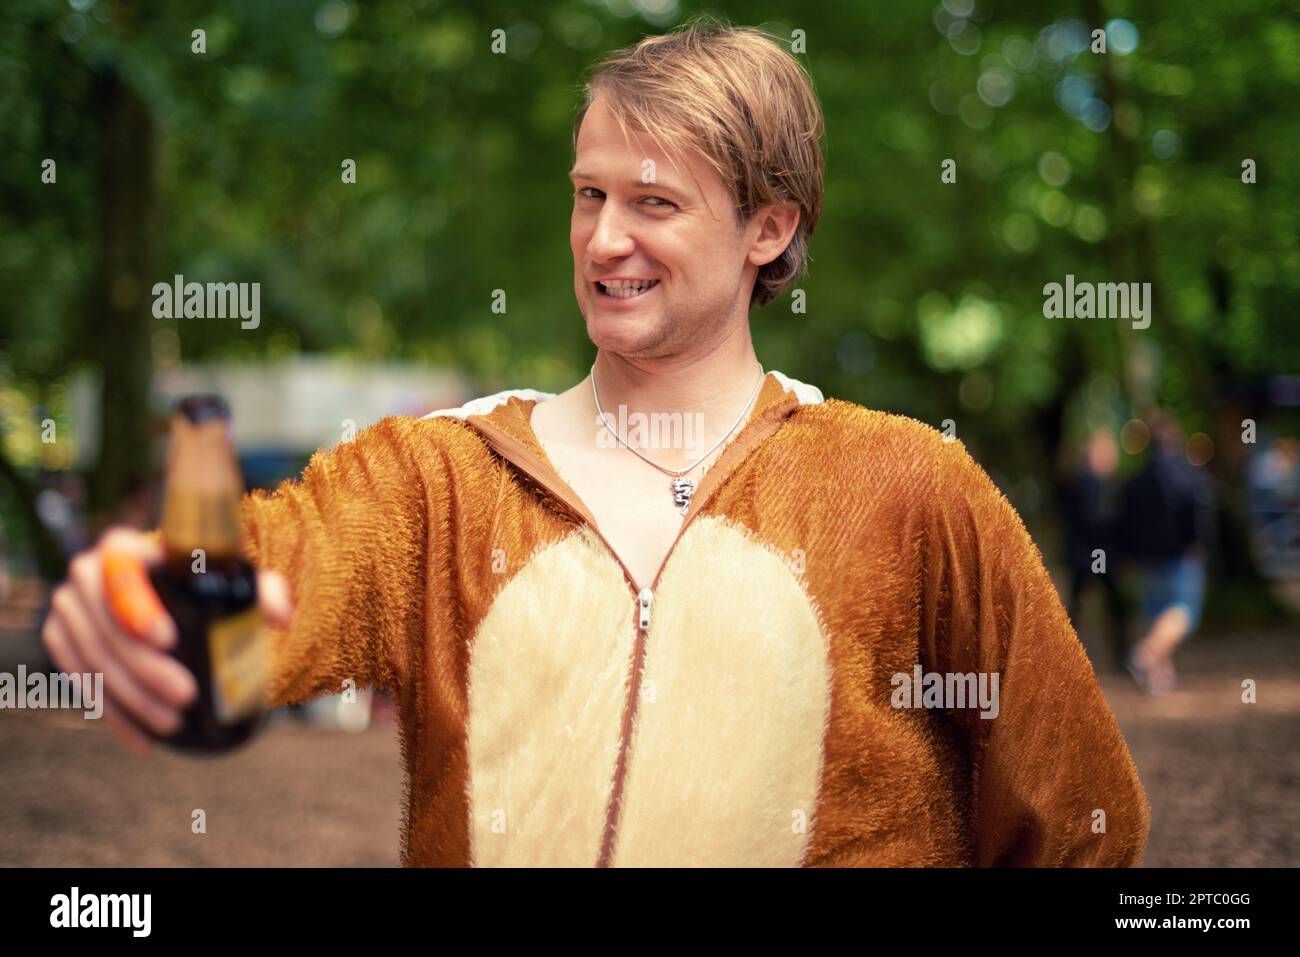 Partylöwe. Porträt eines jungen Mannes, der draußen ein Bier trinkt, während er in einem Bärenanzug gekleidet ist Stockfoto